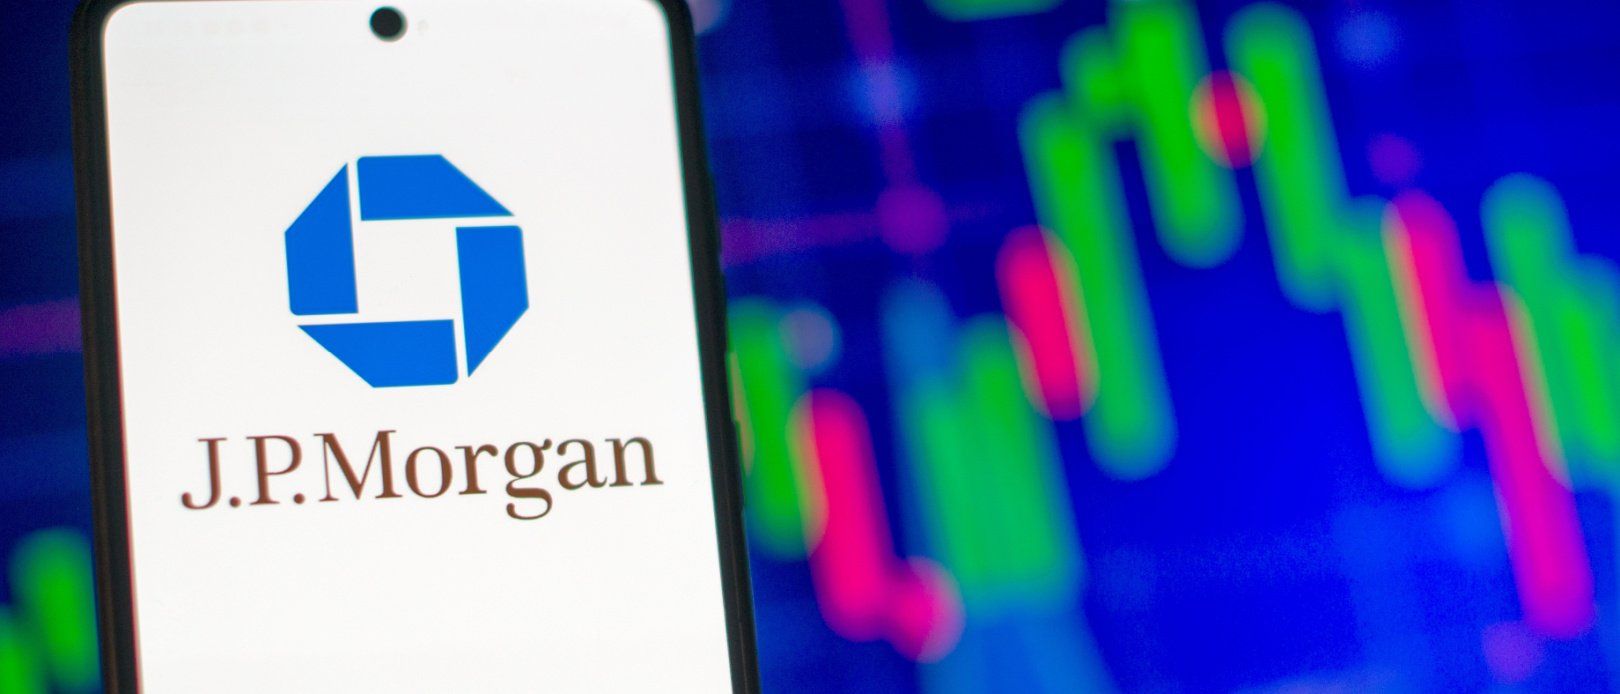 P Morgan Self-Directed Investing review